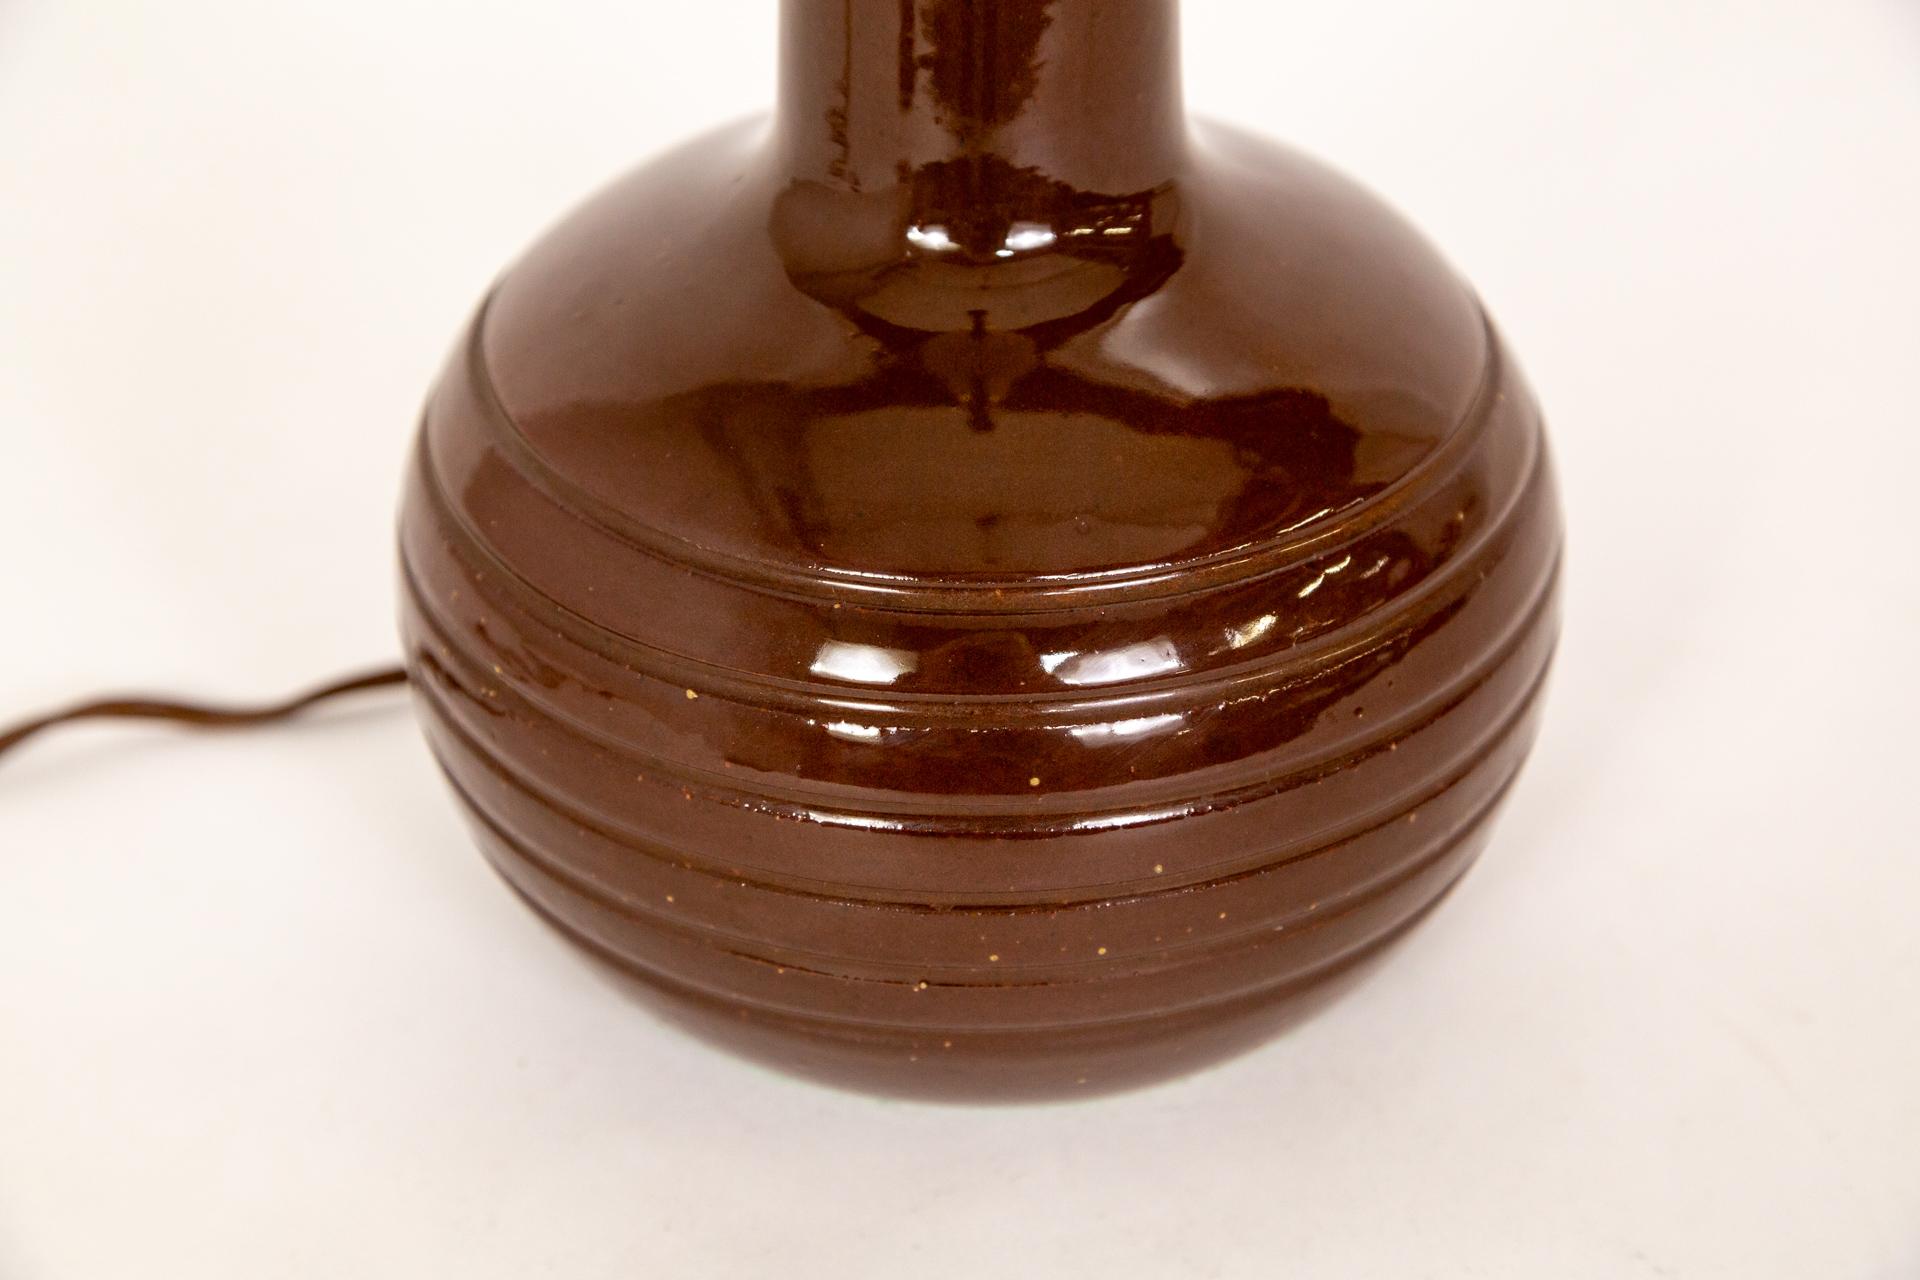 Petite lampe en céramique aux lignes épurées et à la glaçure brillante d'un brun rouge profond, fabriquée par Marshall Studios et conçue par Jane et Gordon Martz, vers les années 1960.  Signé au dos.  Câblage d'origine, vérifié par nos techniciens